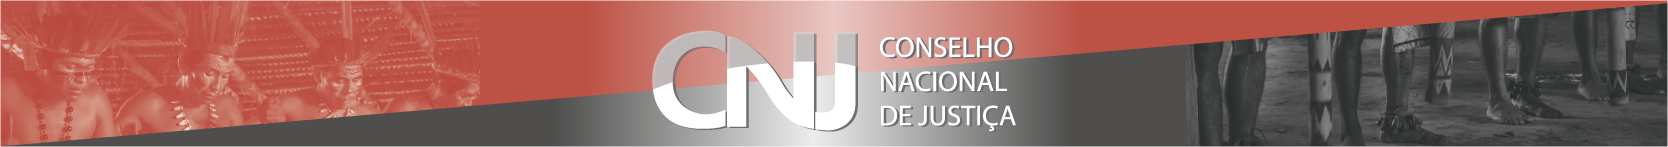 Cabeçalho Logo CNJ